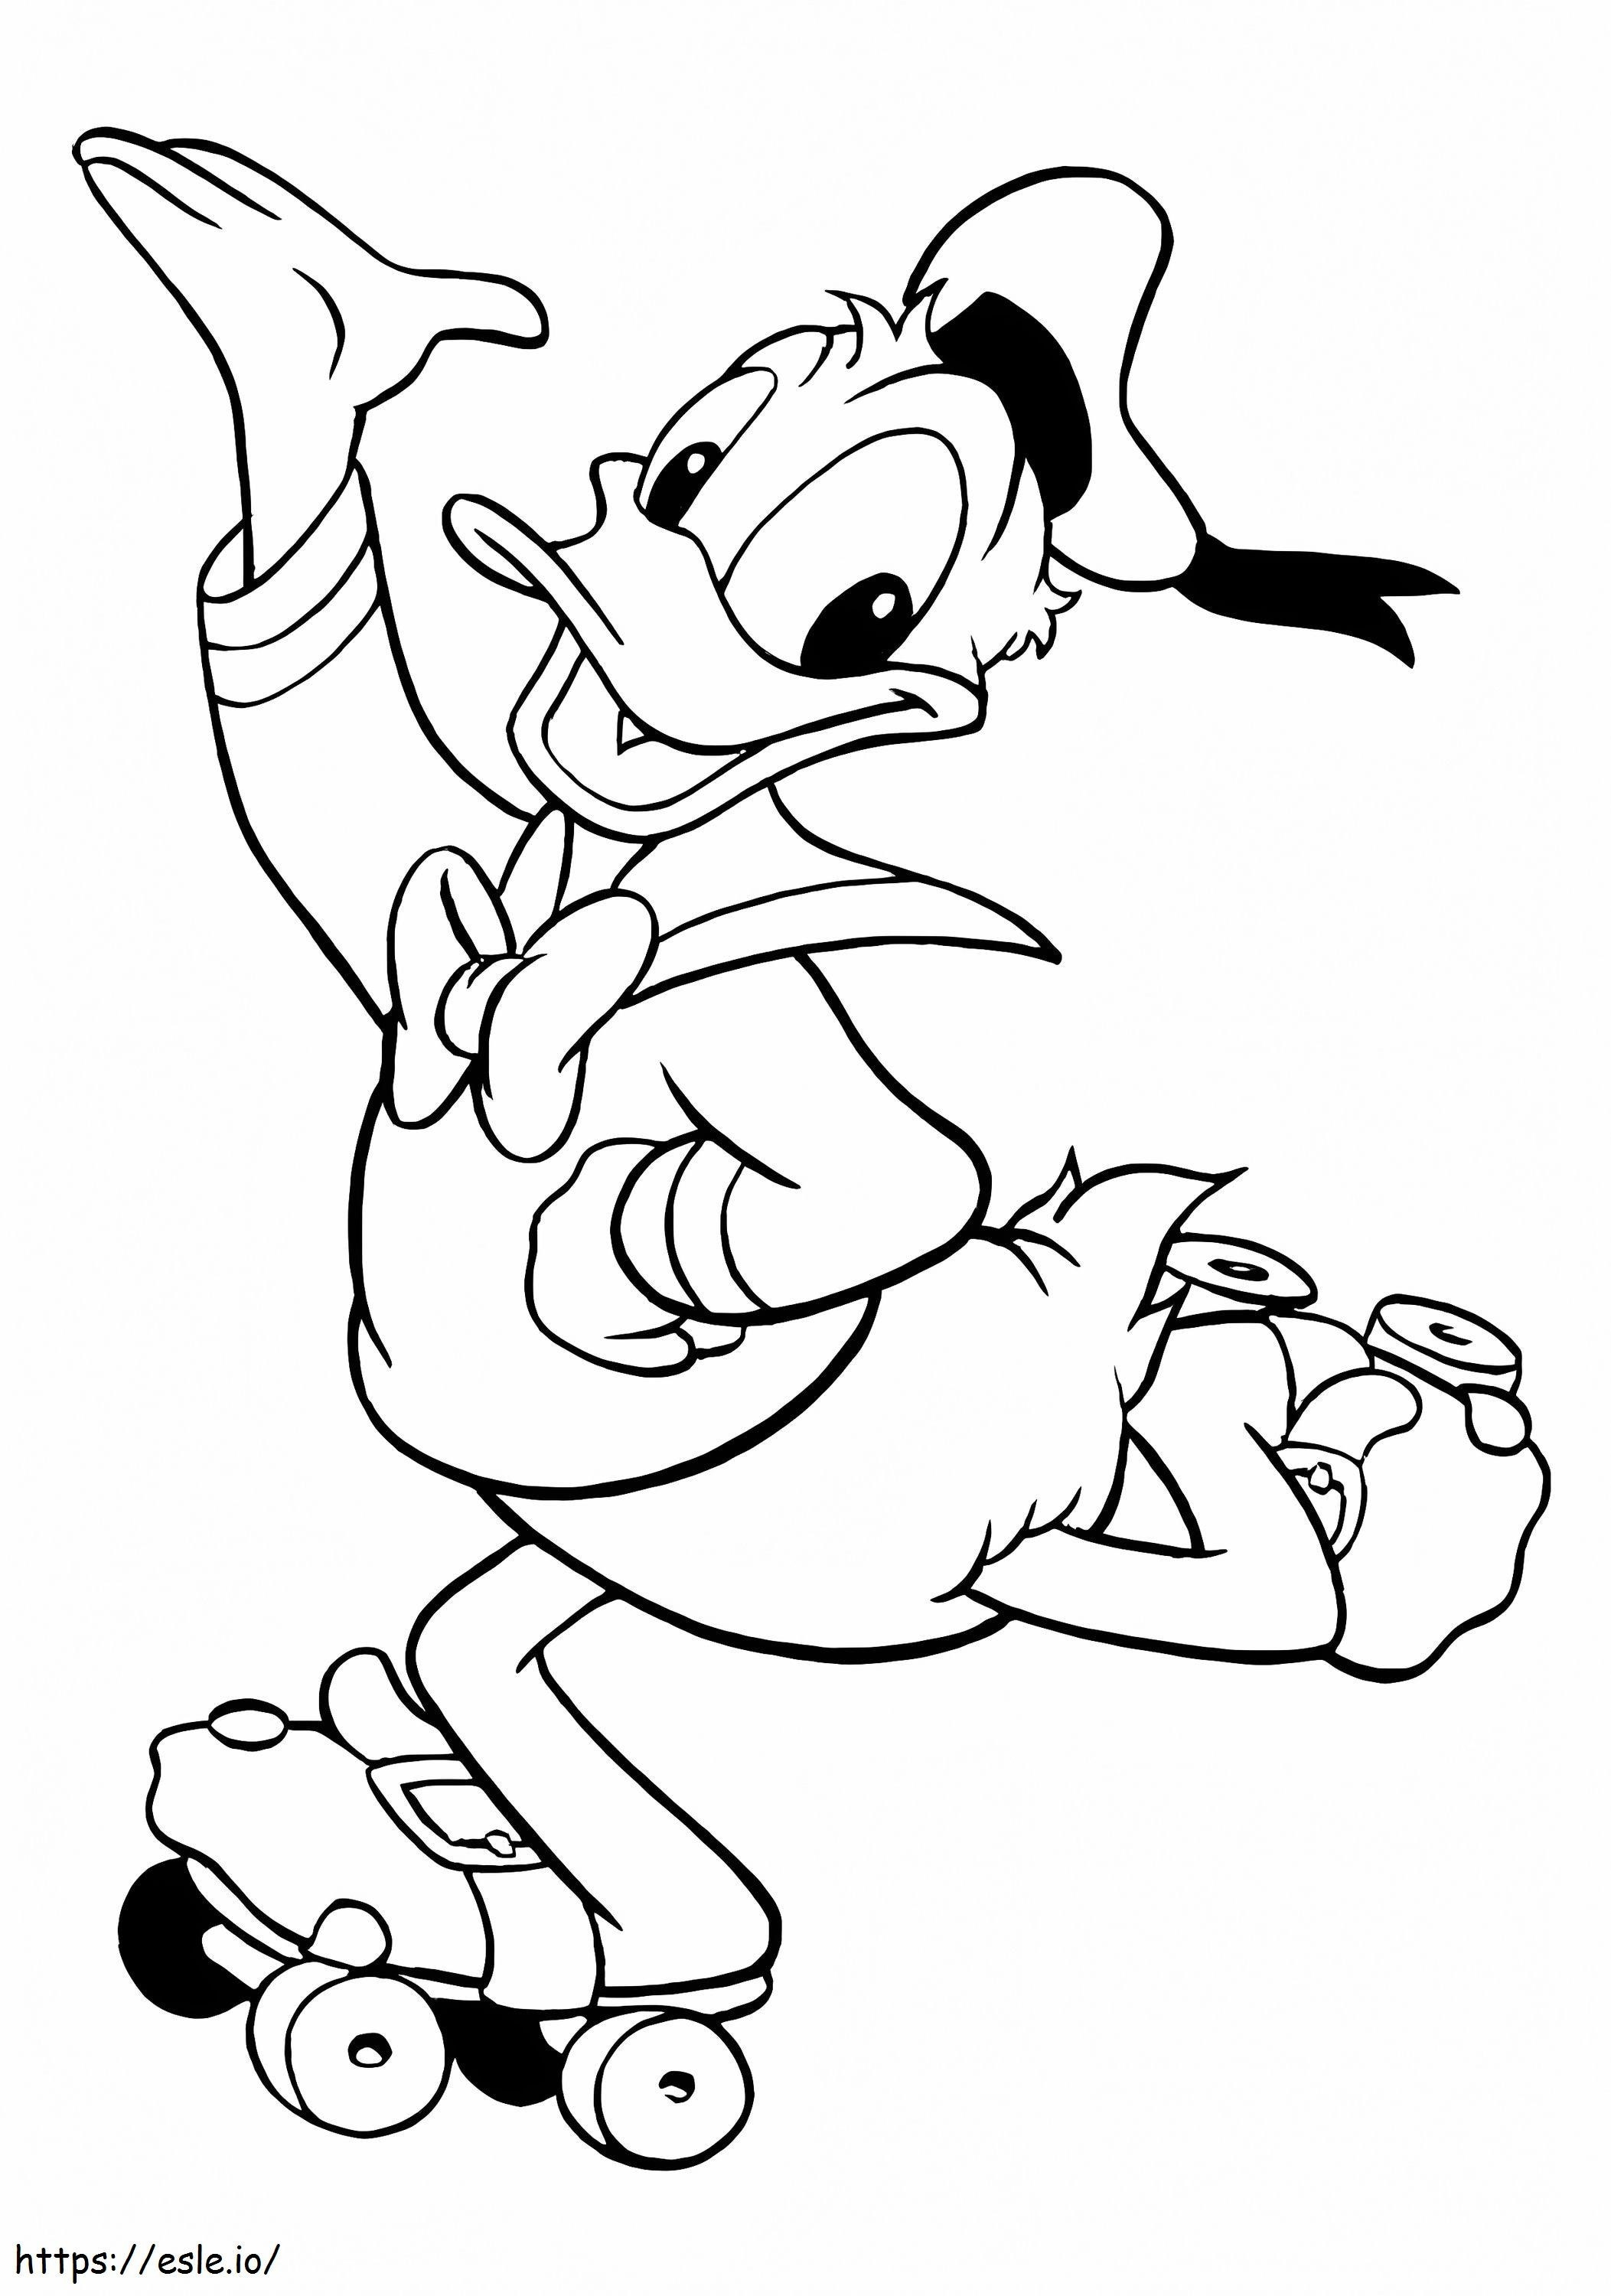 Donald pe patine cu role de colorat